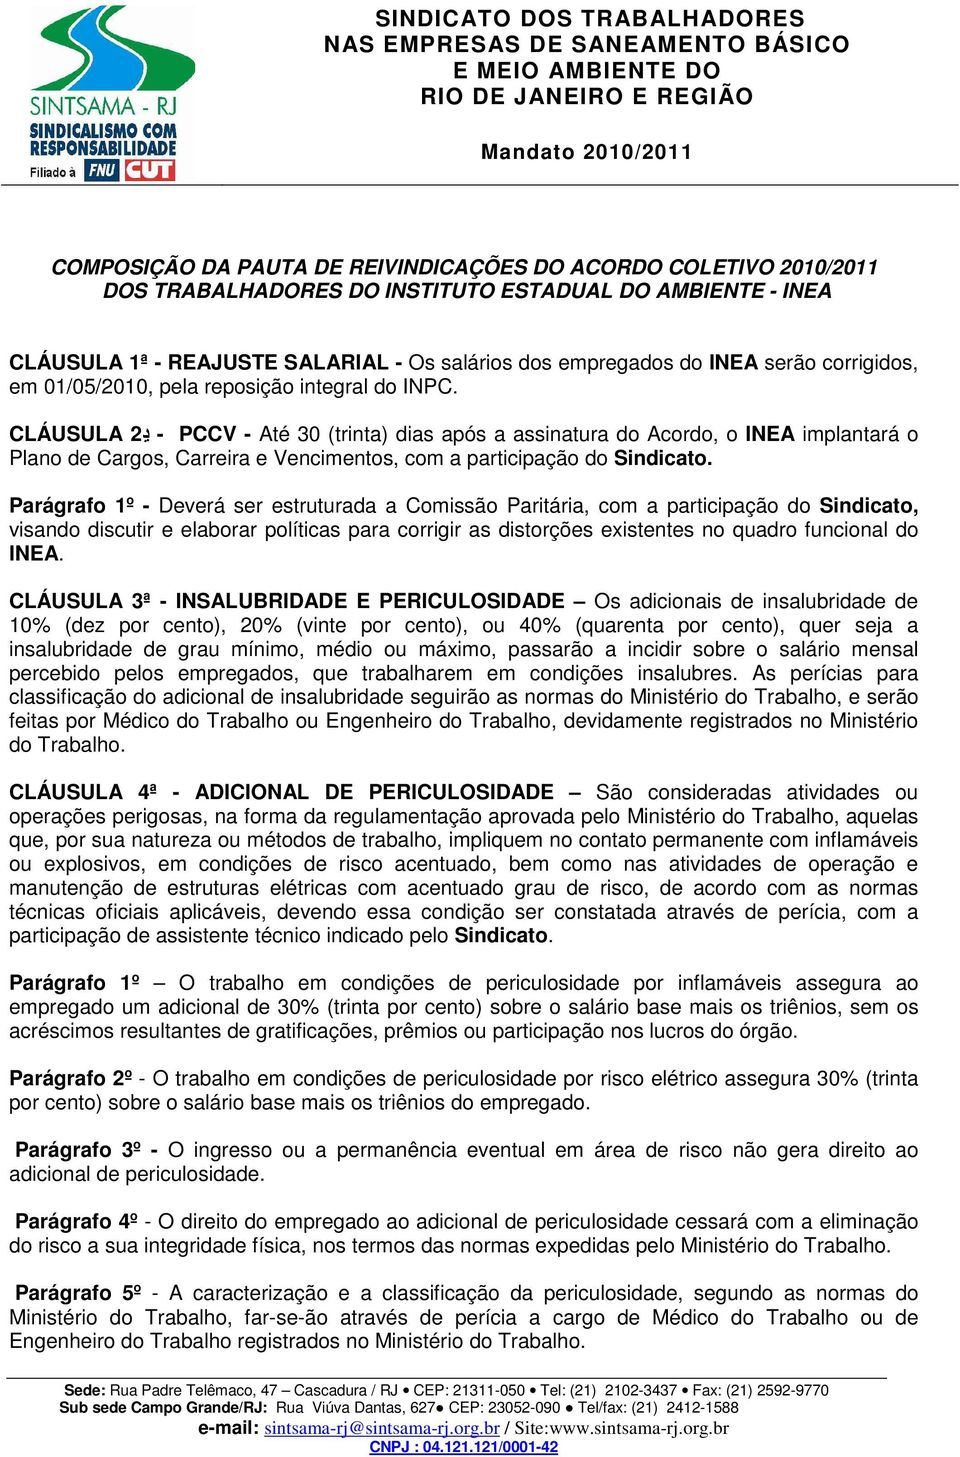 CLÁUSULA ڍ 2 - PCCV - Até 30 (trinta) dias após a assinatura do Acordo, o INEA implantará o Plano de Cargos, Carreira e Vencimentos, com a participação do Sindicato.